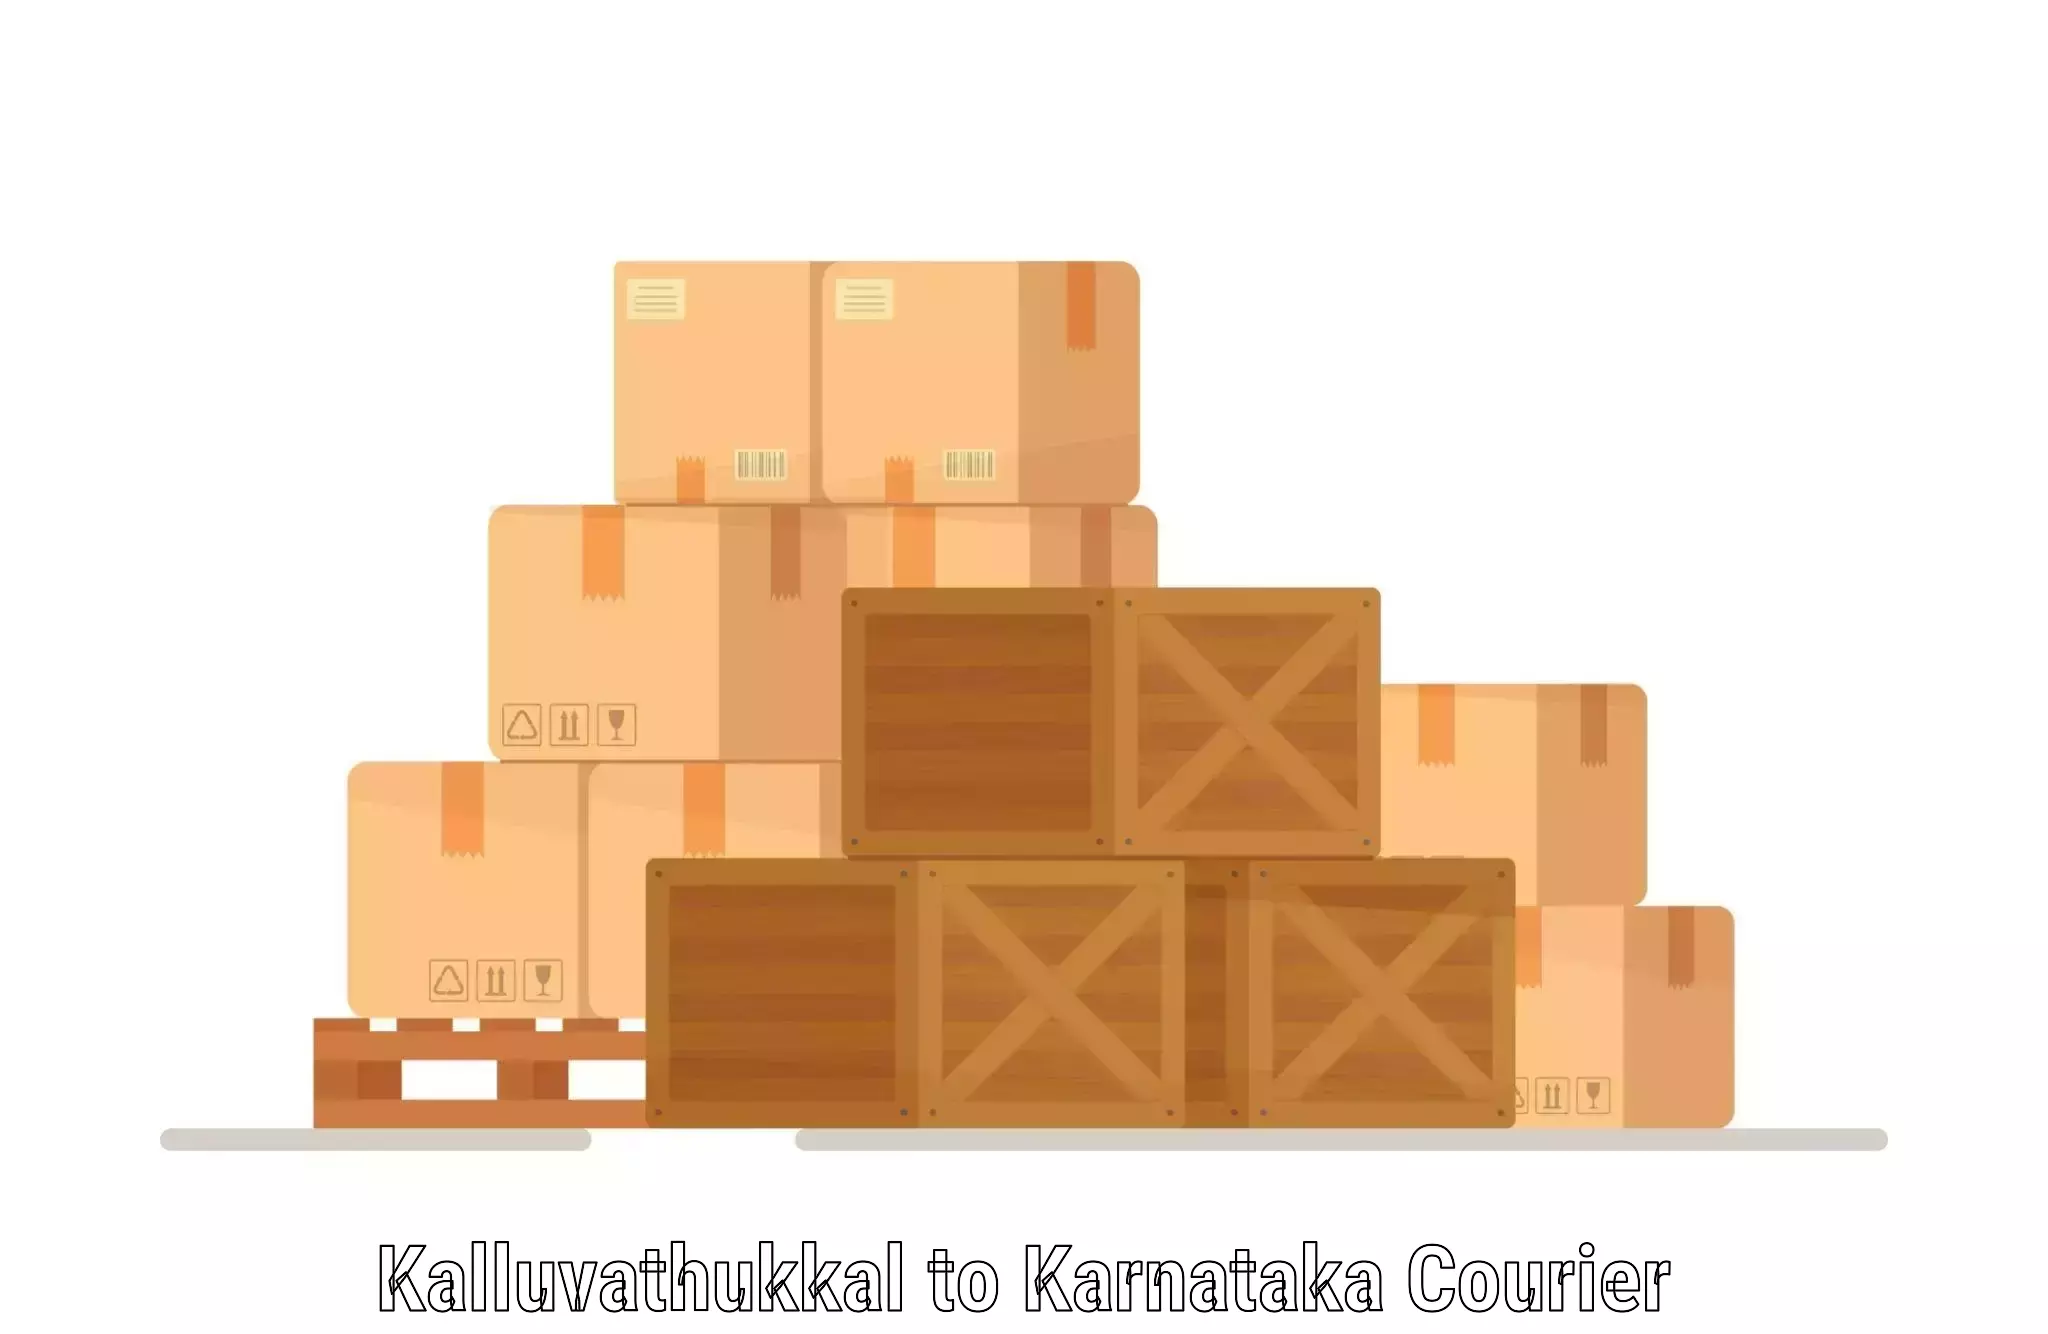 International parcel service Kalluvathukkal to Yellapur